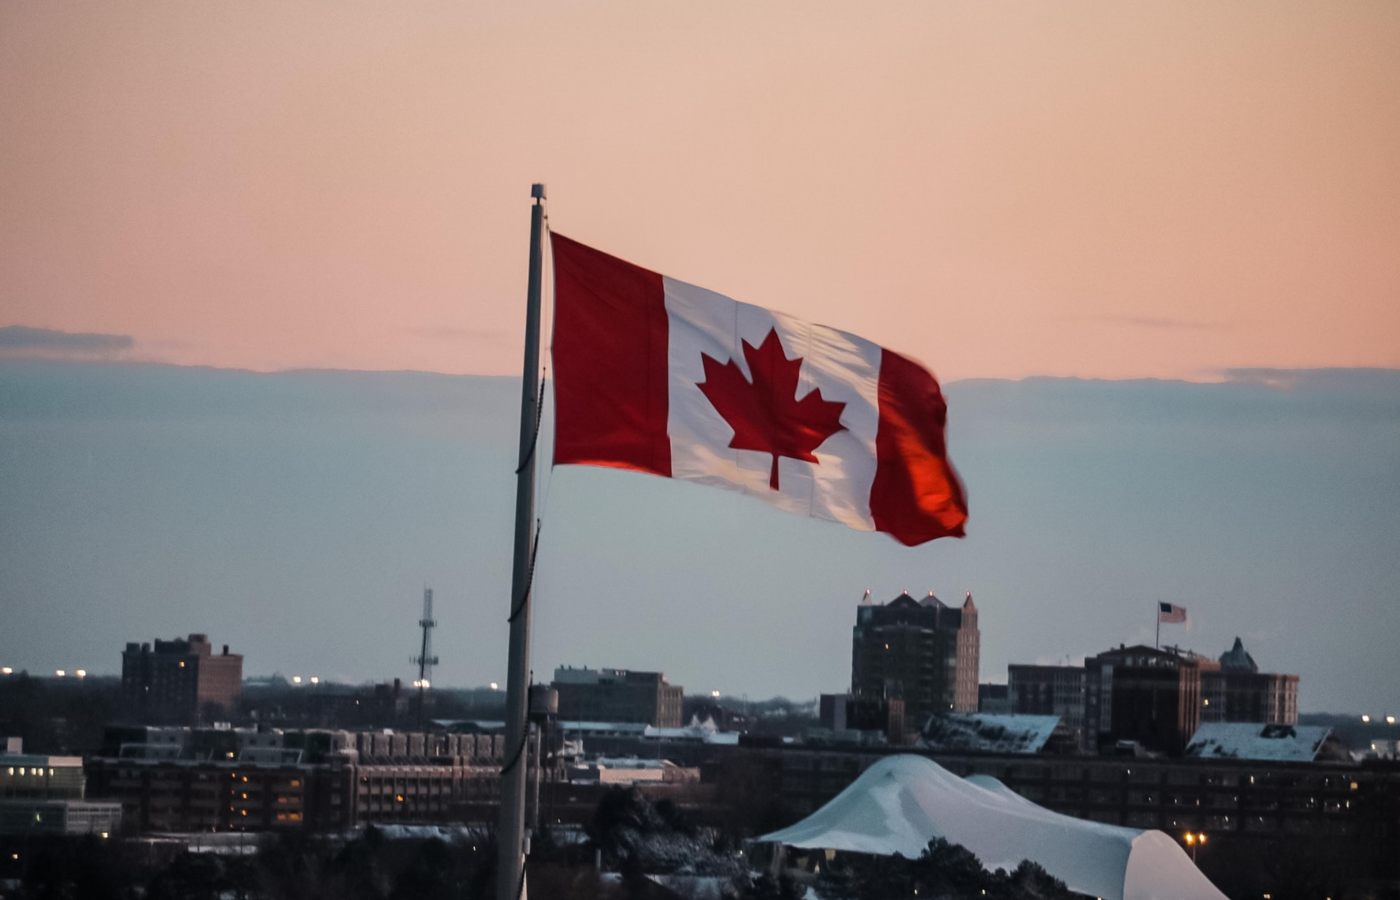 Bandeira do Canadá hasteada ao céu no fim da tarde